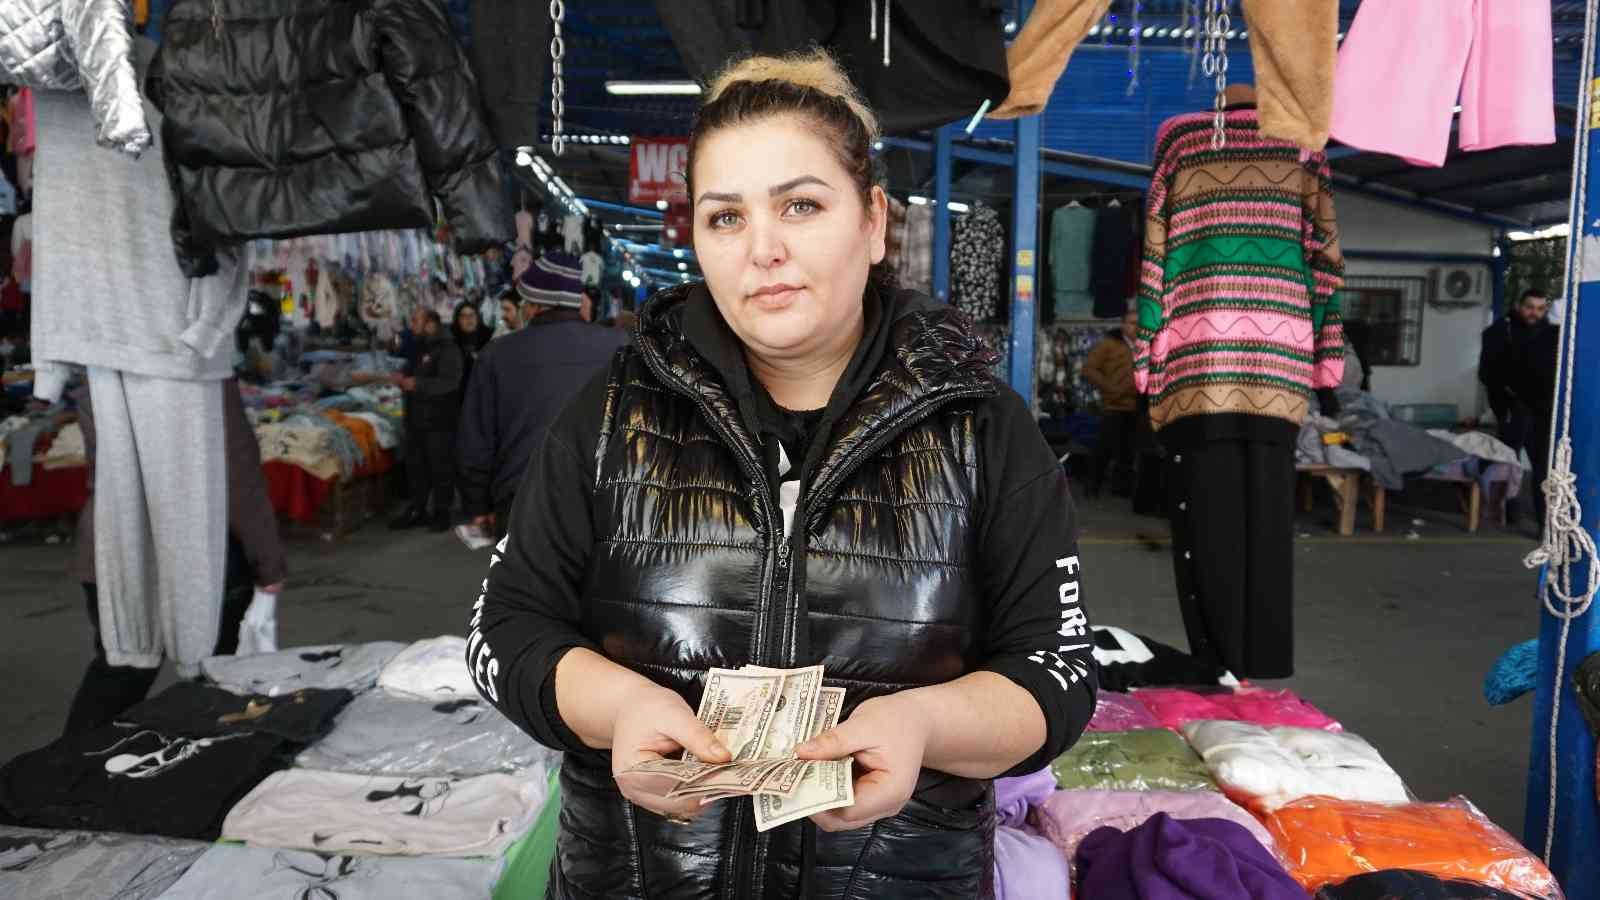 Pazar esnafına Bulgar turistten sahte dolar şoku #edirne